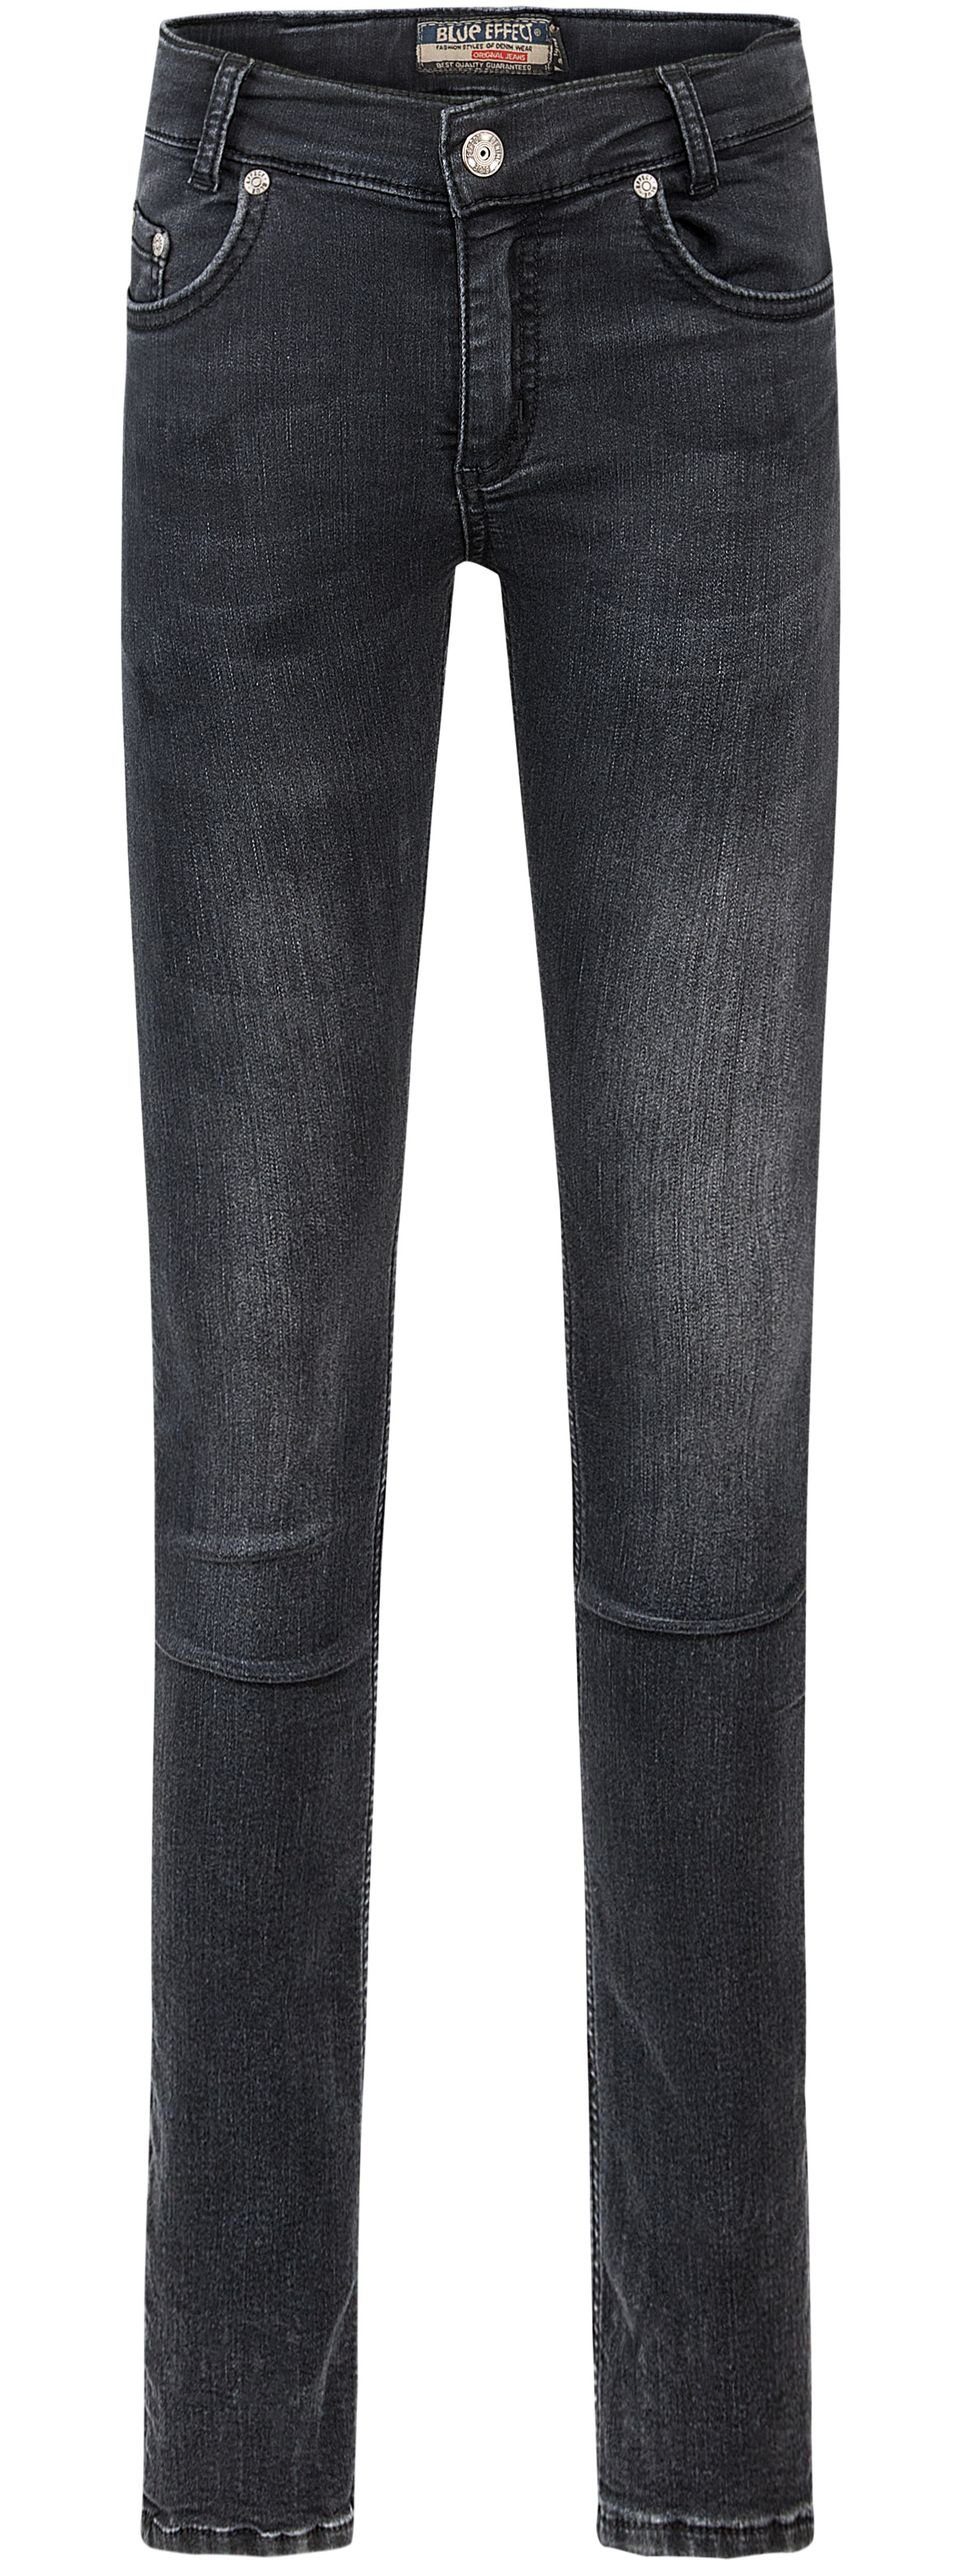 Jeans Hose Slim-fit-Jeans ultrastretch fit BLUE slim Skinny EFFECT black